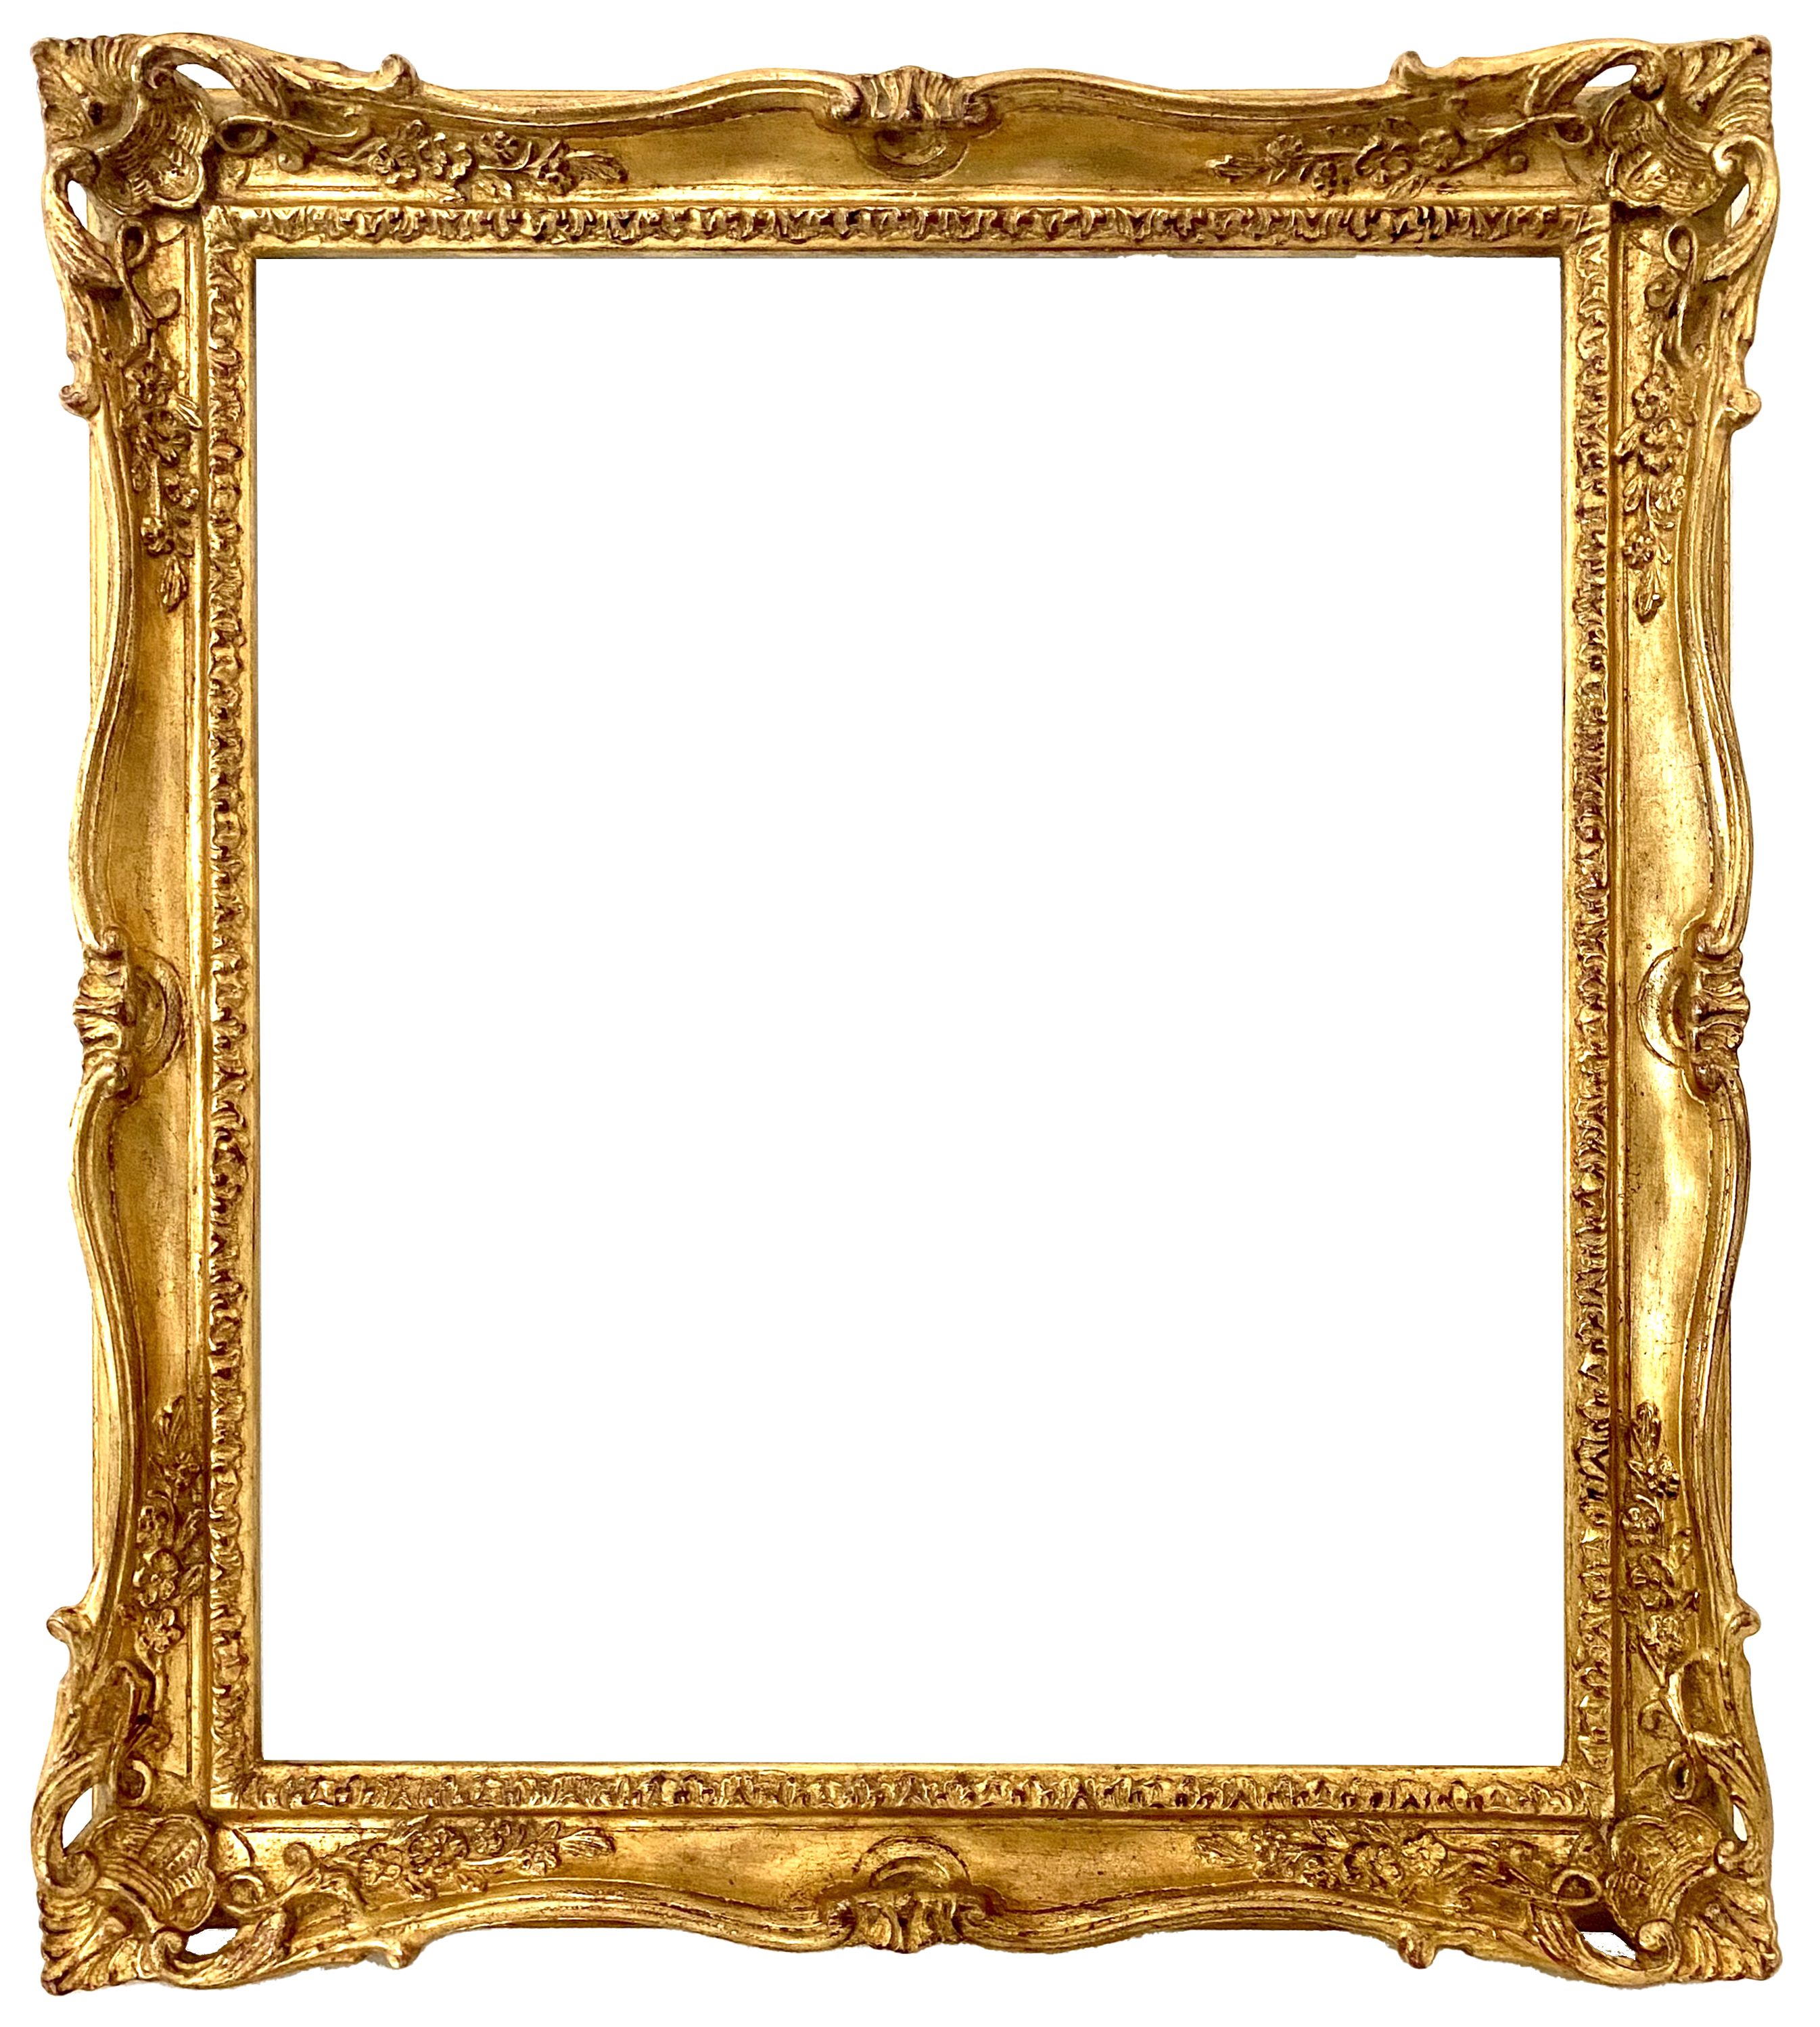 Cadre de style Louis XV - 37,50 x 32,40 - REF - 1570